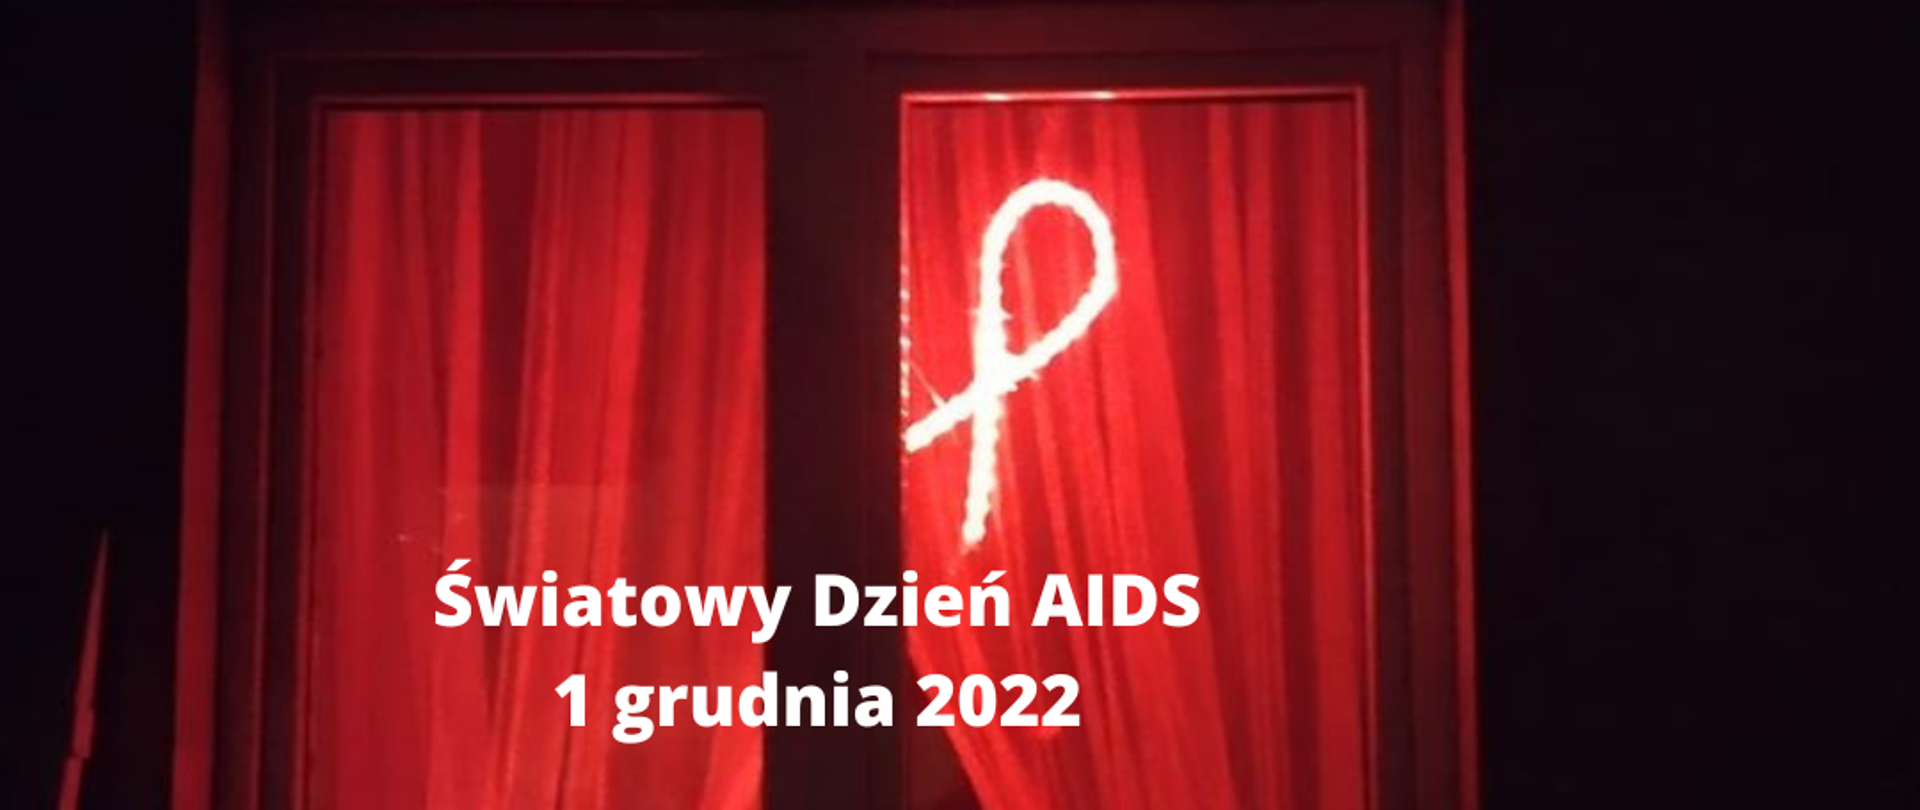 Zdjęcie przedstawia okno mieszkania w nocy, w oknie świeci się czerwona kokarda. Na zdjęciu znajduje się biały napis: Światowy Dzień AIDS 1 grudnia 2022. Happening